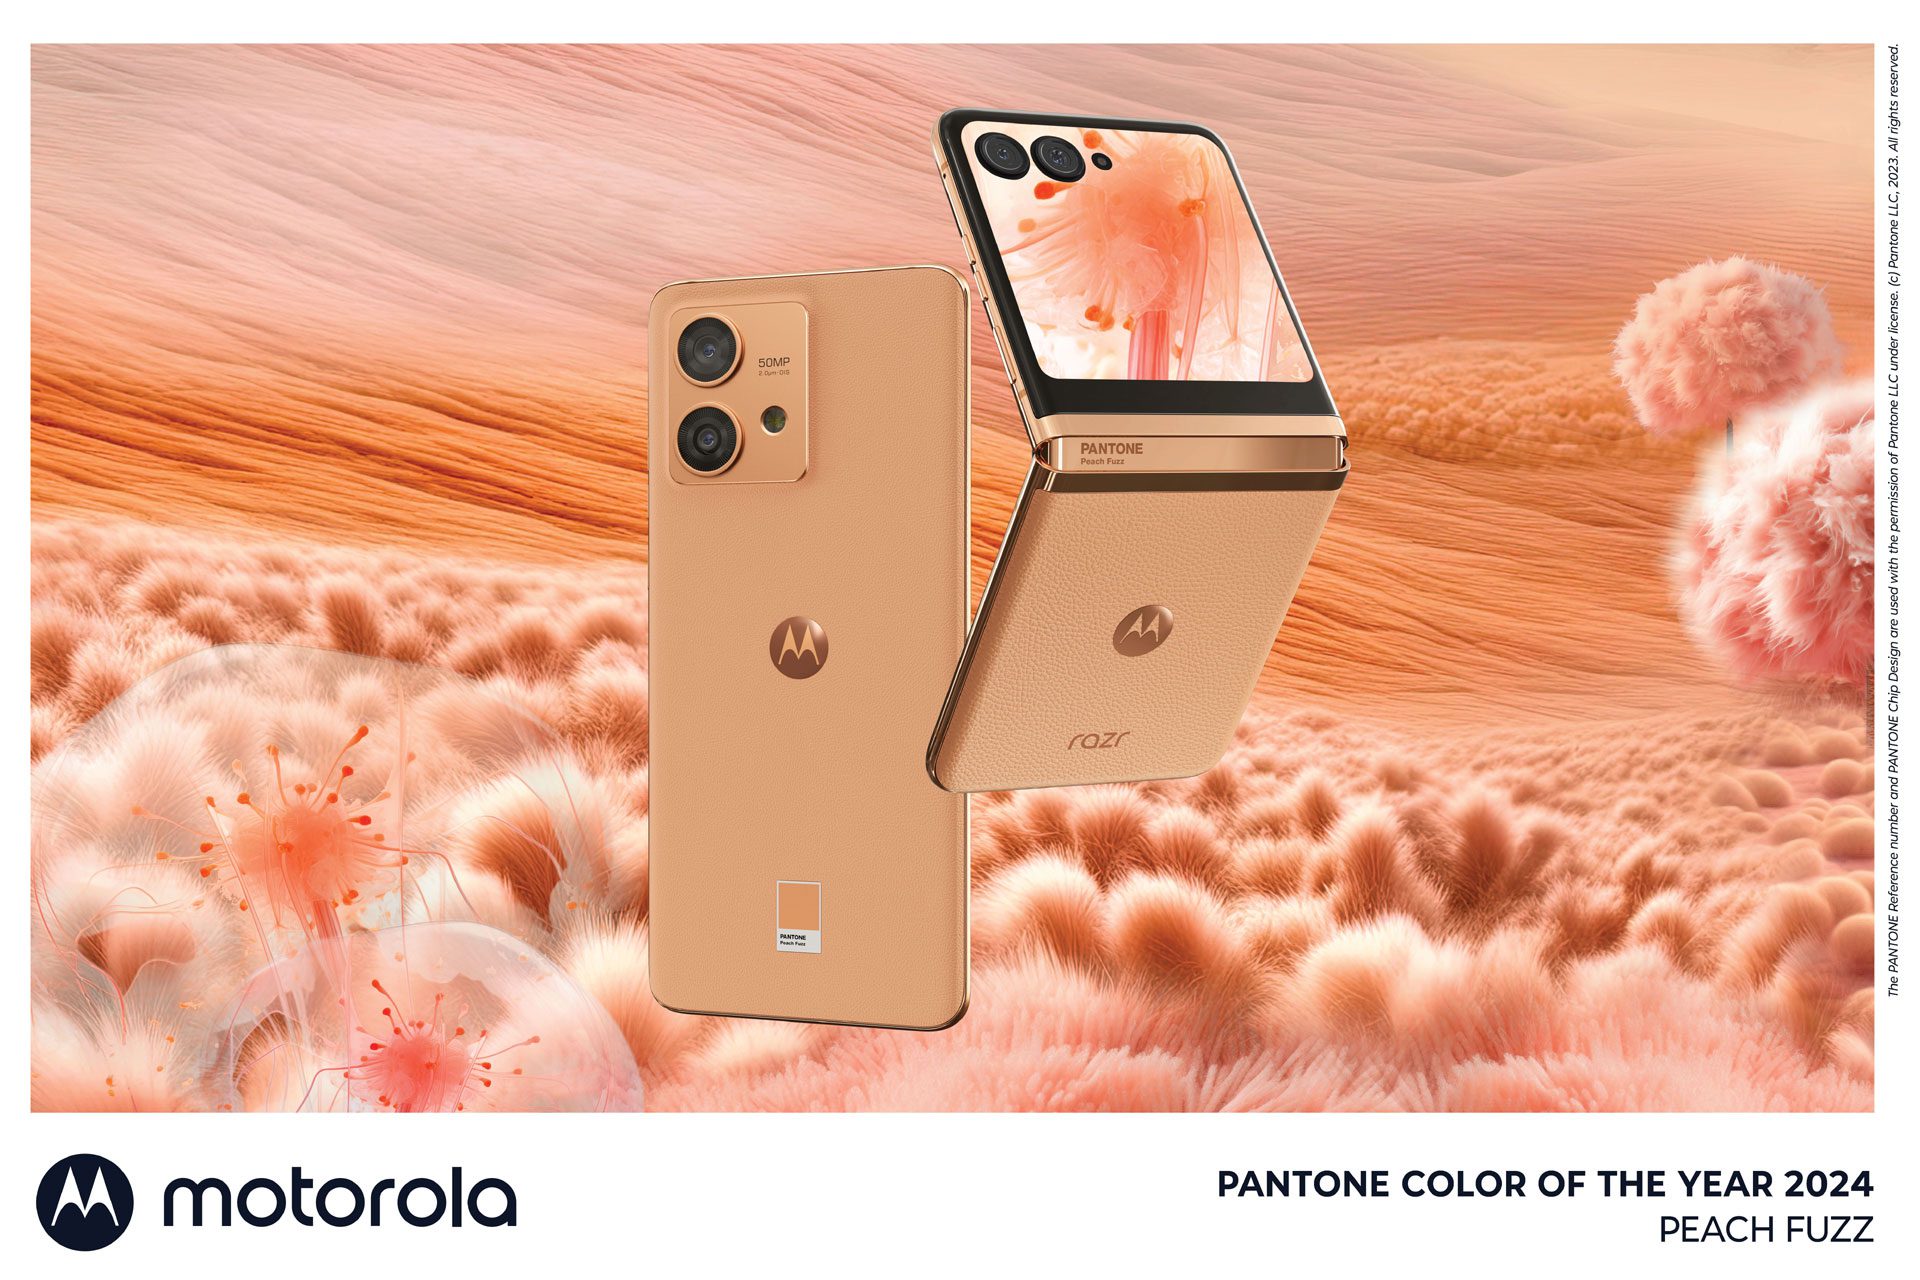 KV Motorola Pantone Peach Fuzz